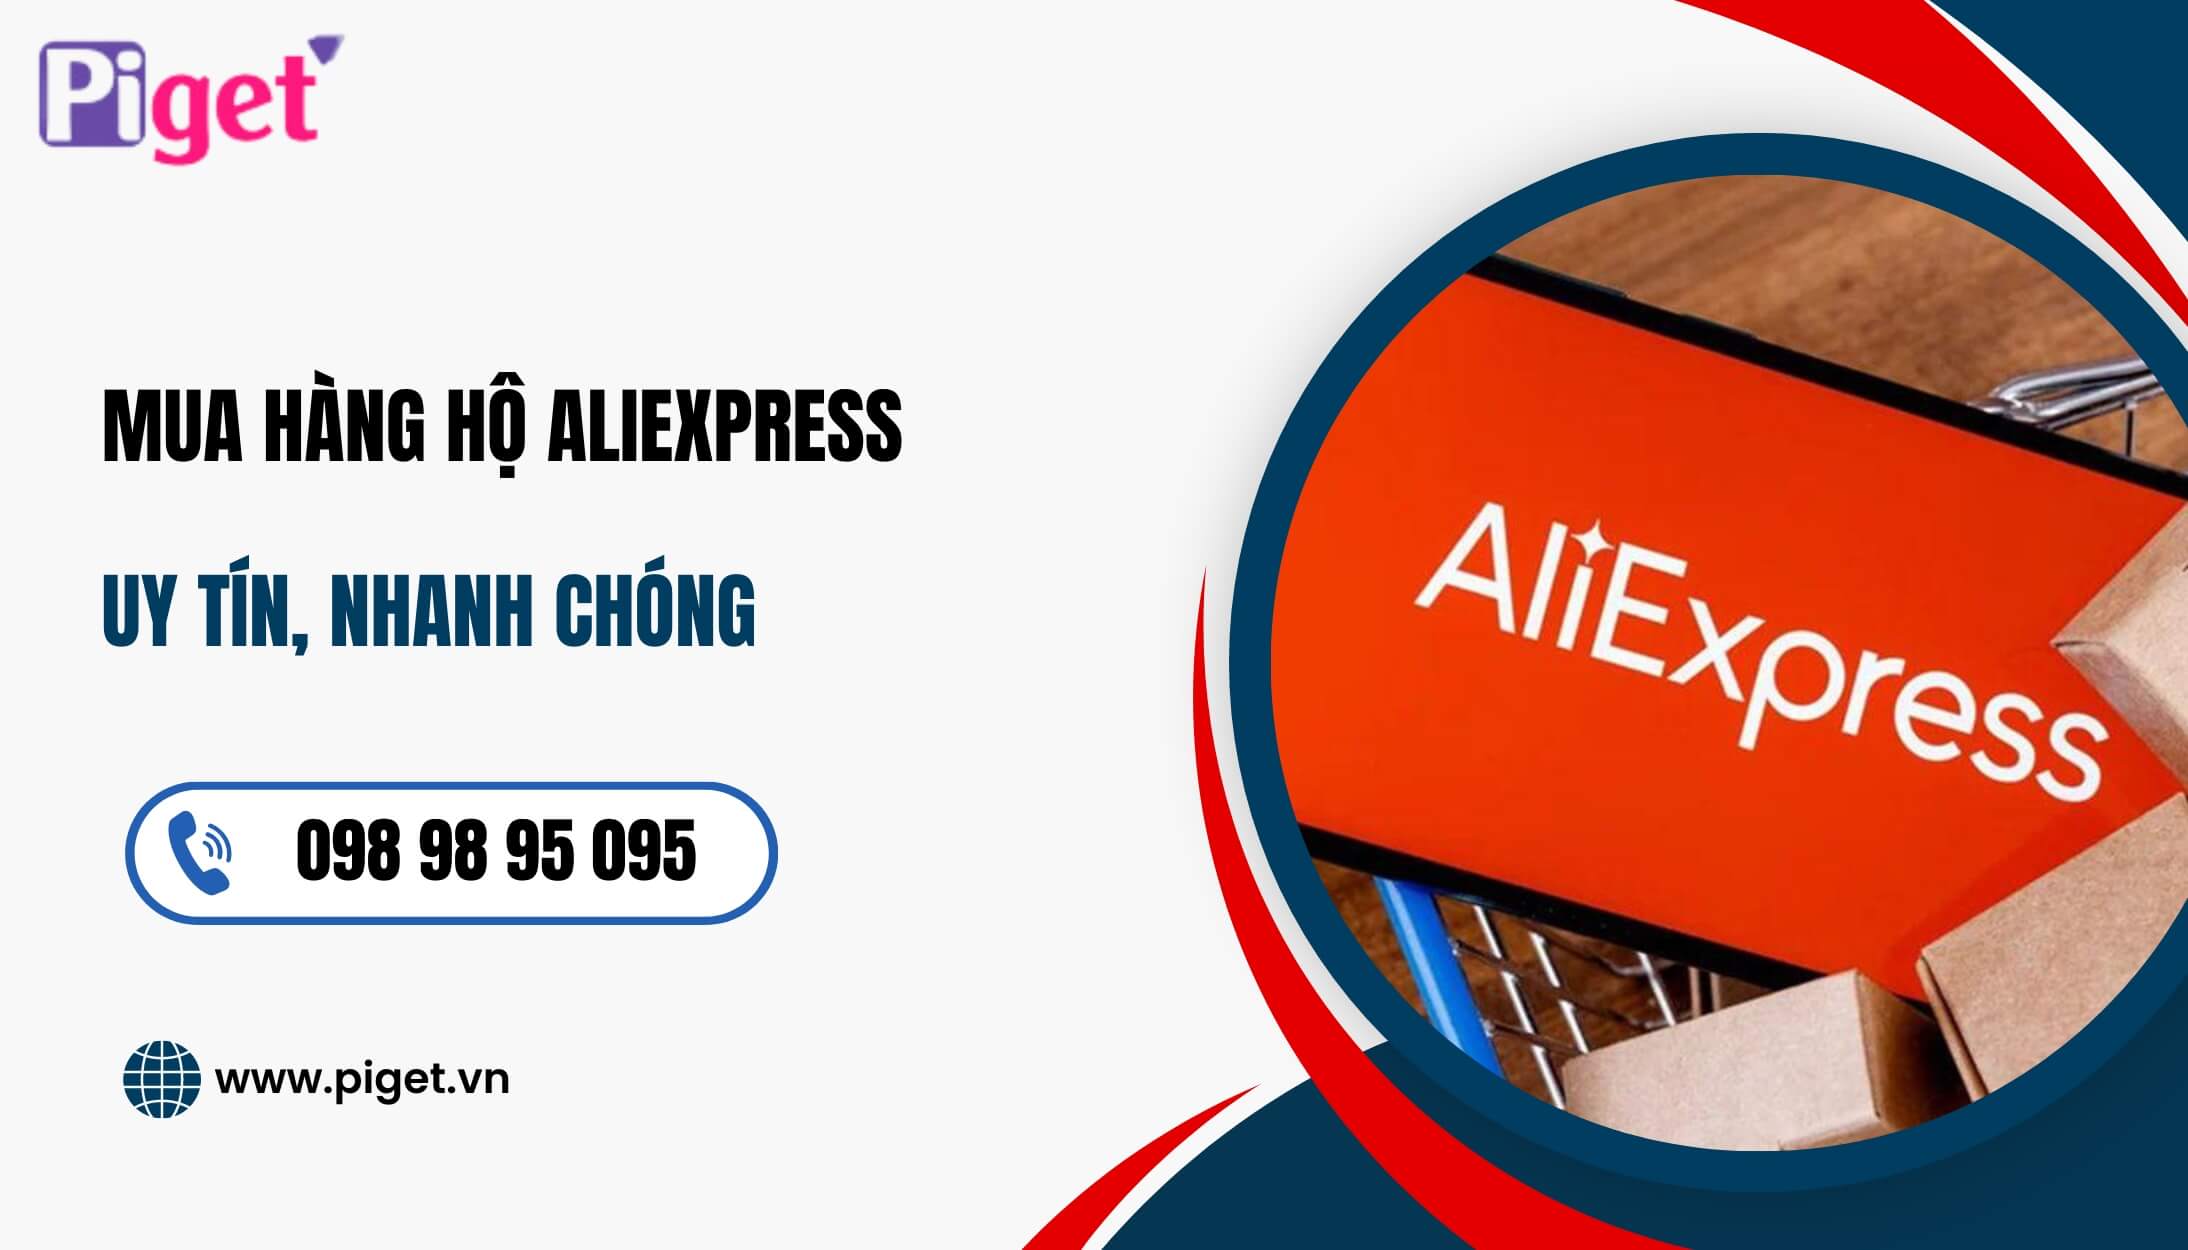 Dịch vụ mua hàng hộ Aliexpress